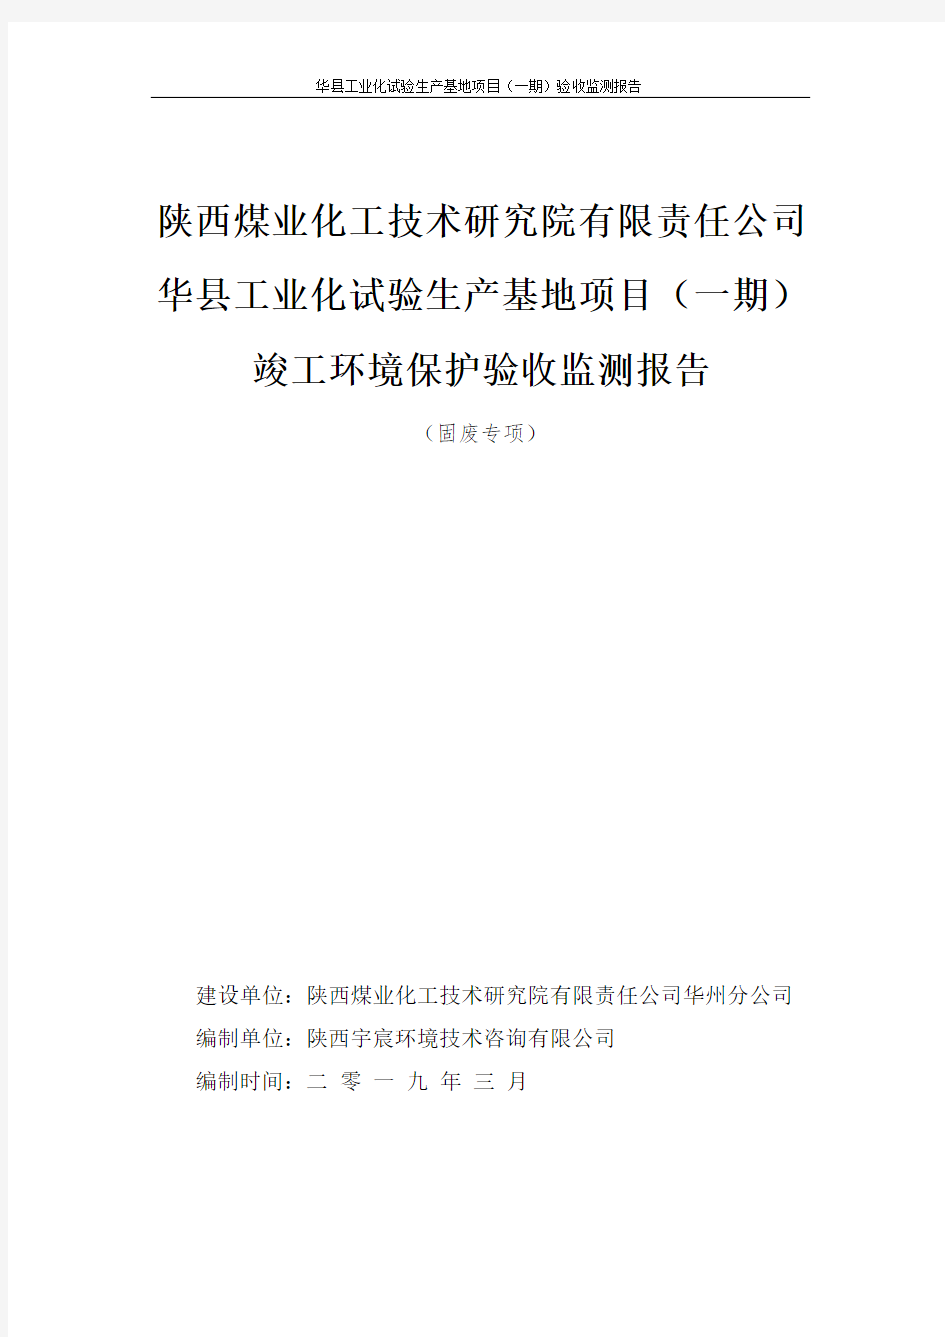 陕西煤业化工技术研究院有限责任公司华县工业化试验生产